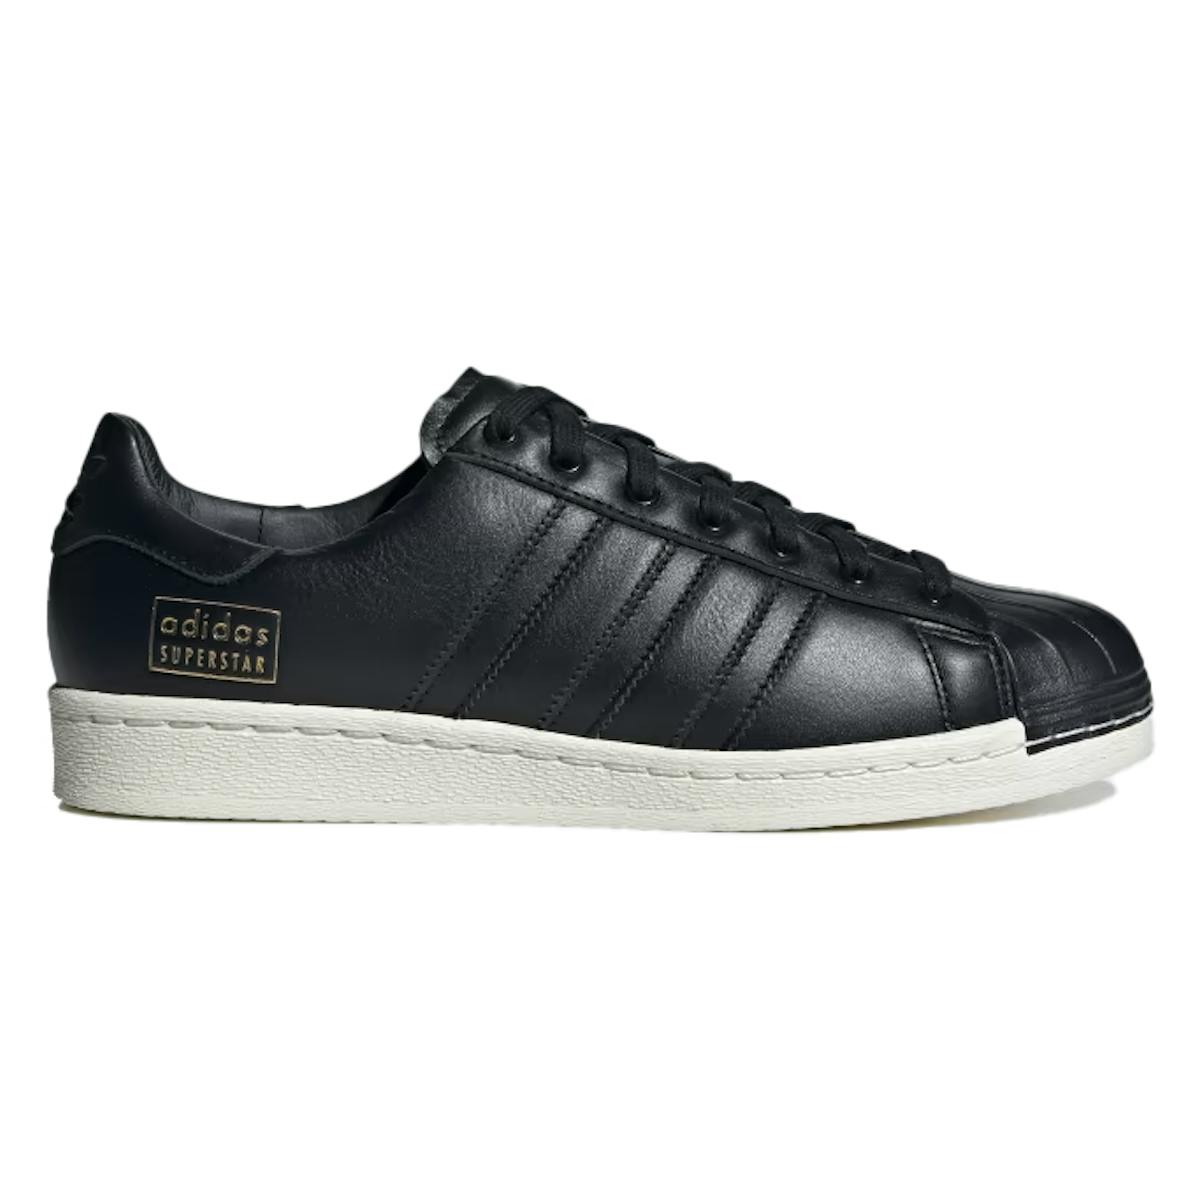 Adidas Superstar Lux "Black"